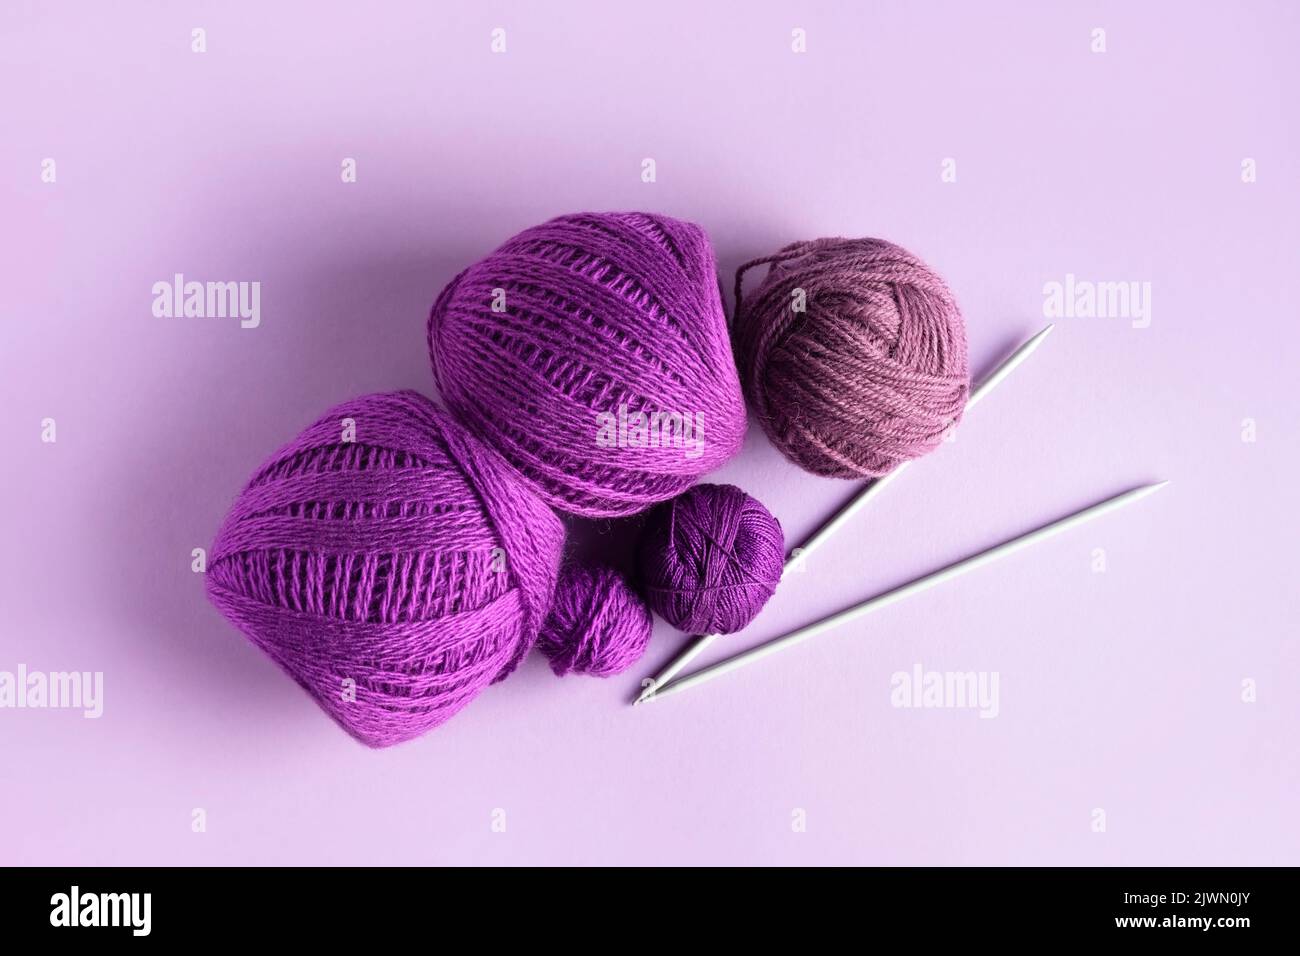 Lilas violet et laine tricotée rose sur fond lilas pour tricoter des vêtements chauds et des hobbies Banque D'Images